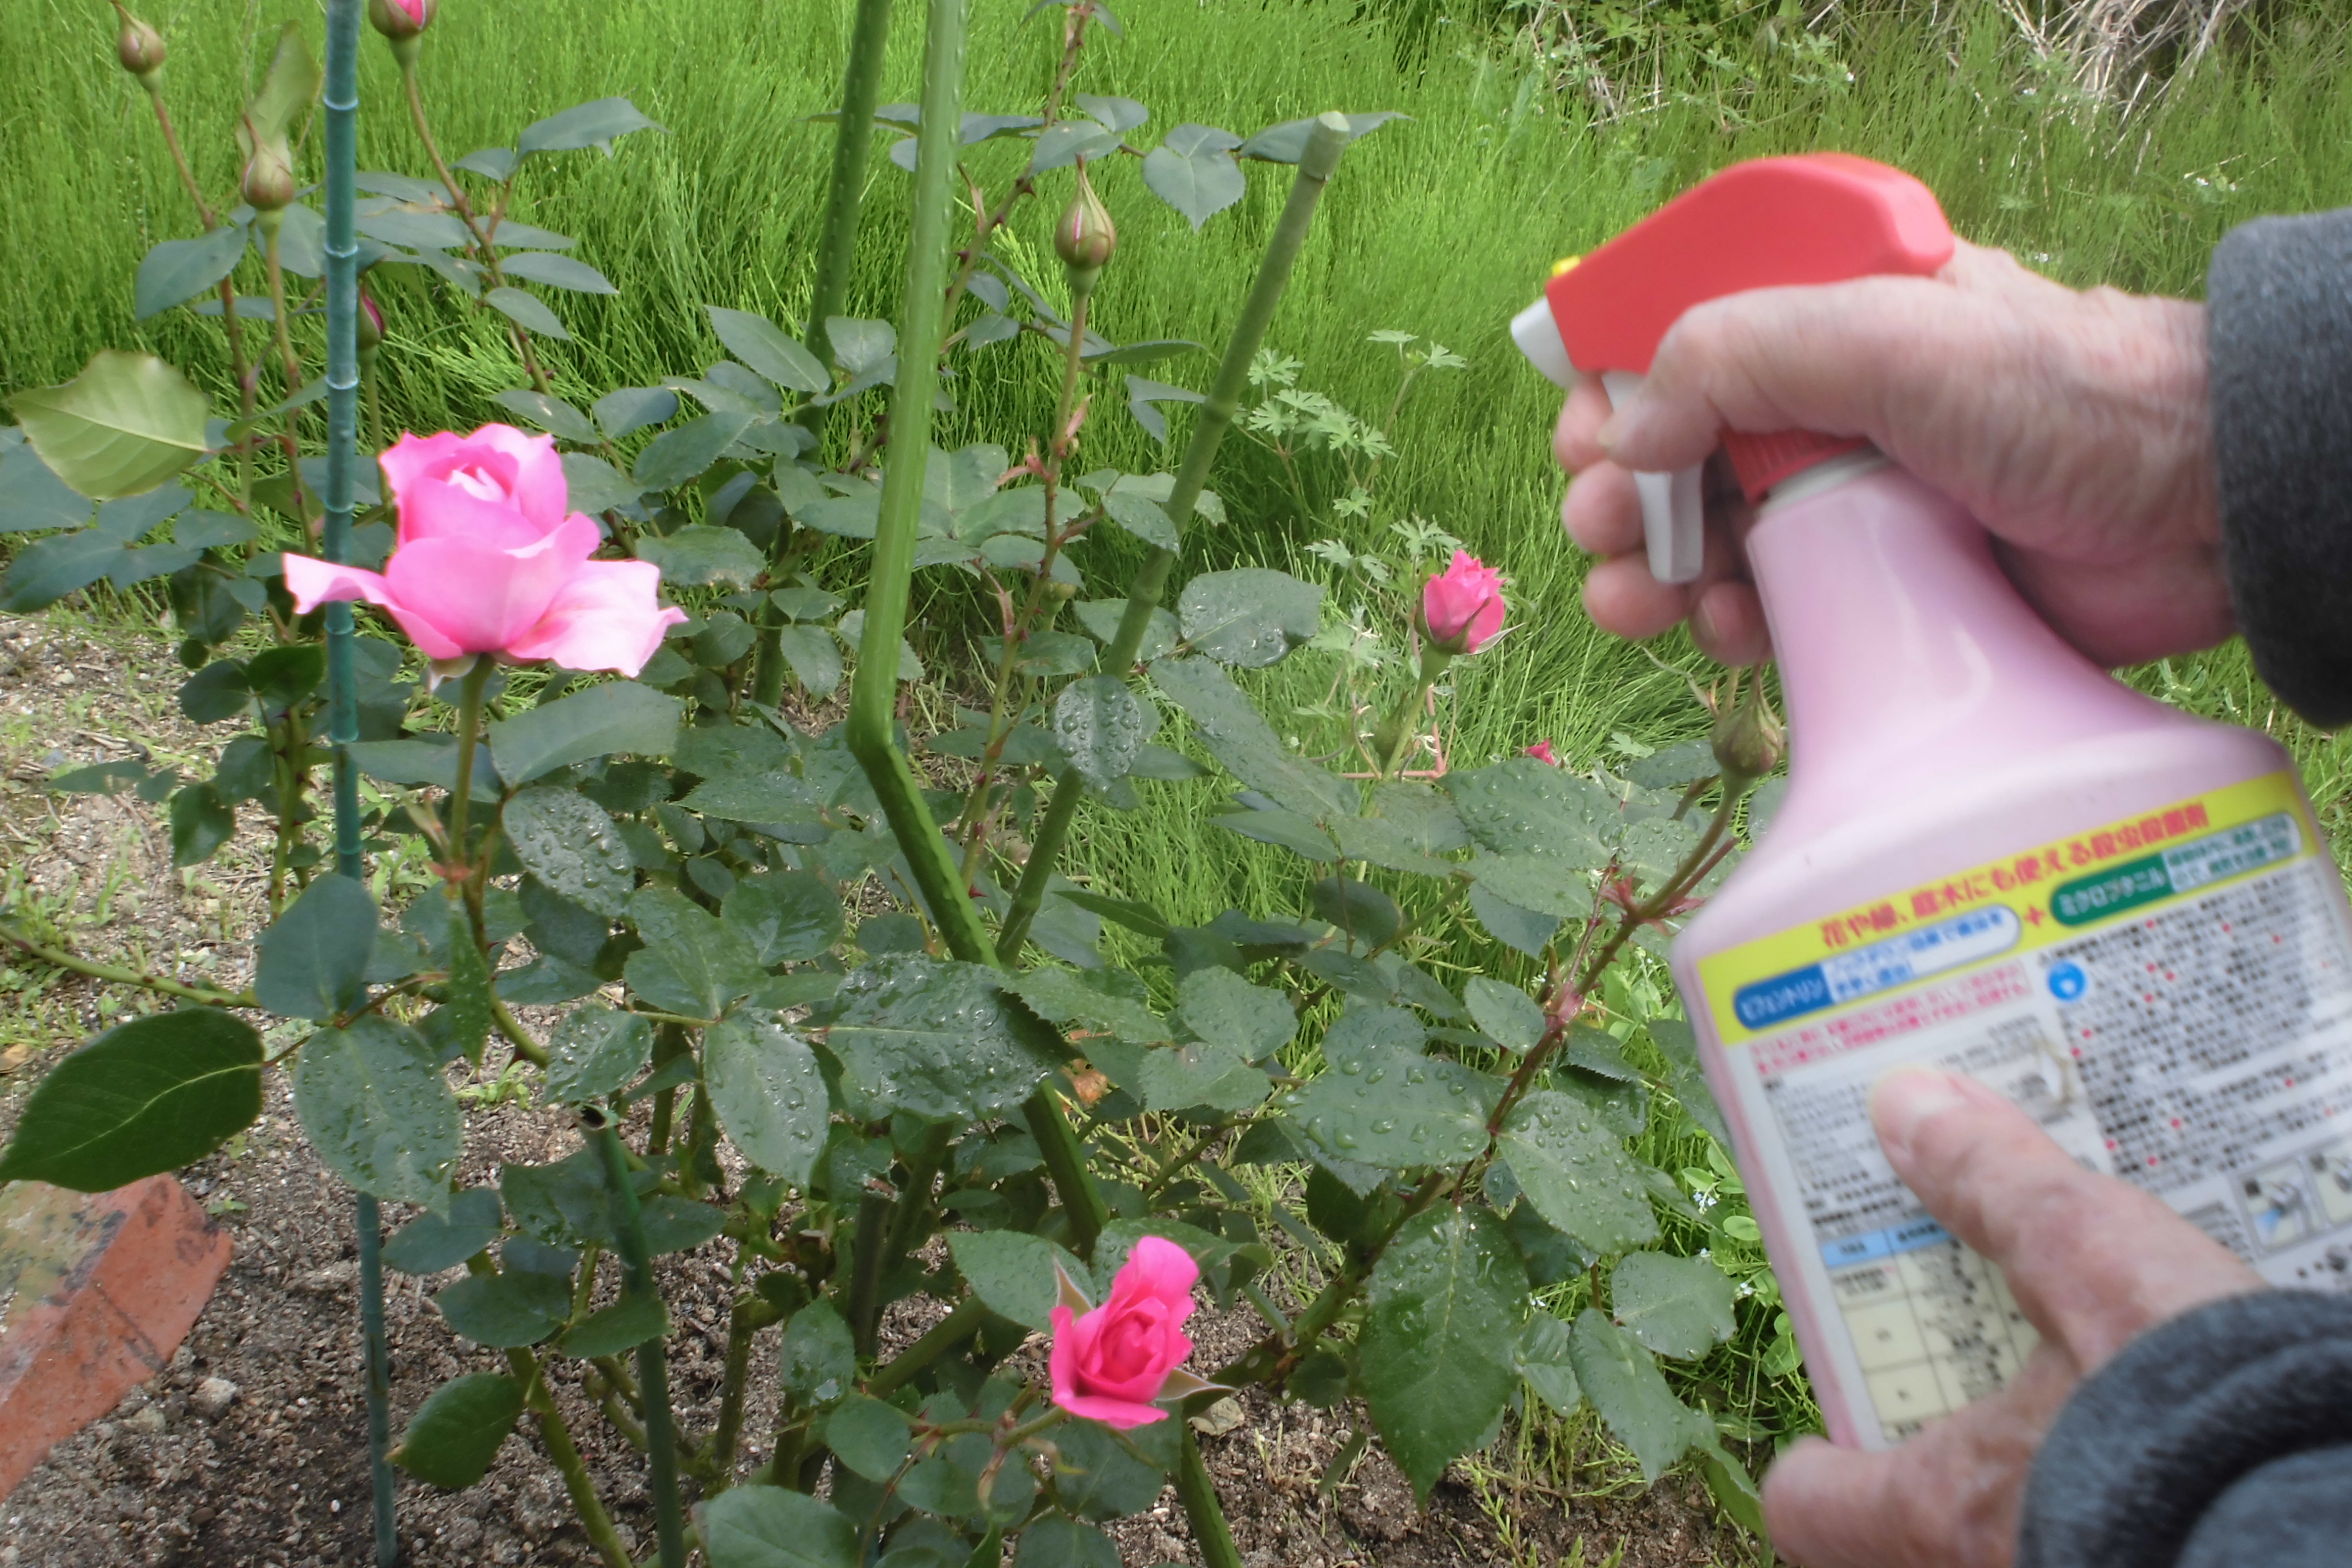 平成30年4月30日 ピンクの薔薇が咲きました 医療法人せいわ会 福岡県小郡市 筑紫野市 糸島市